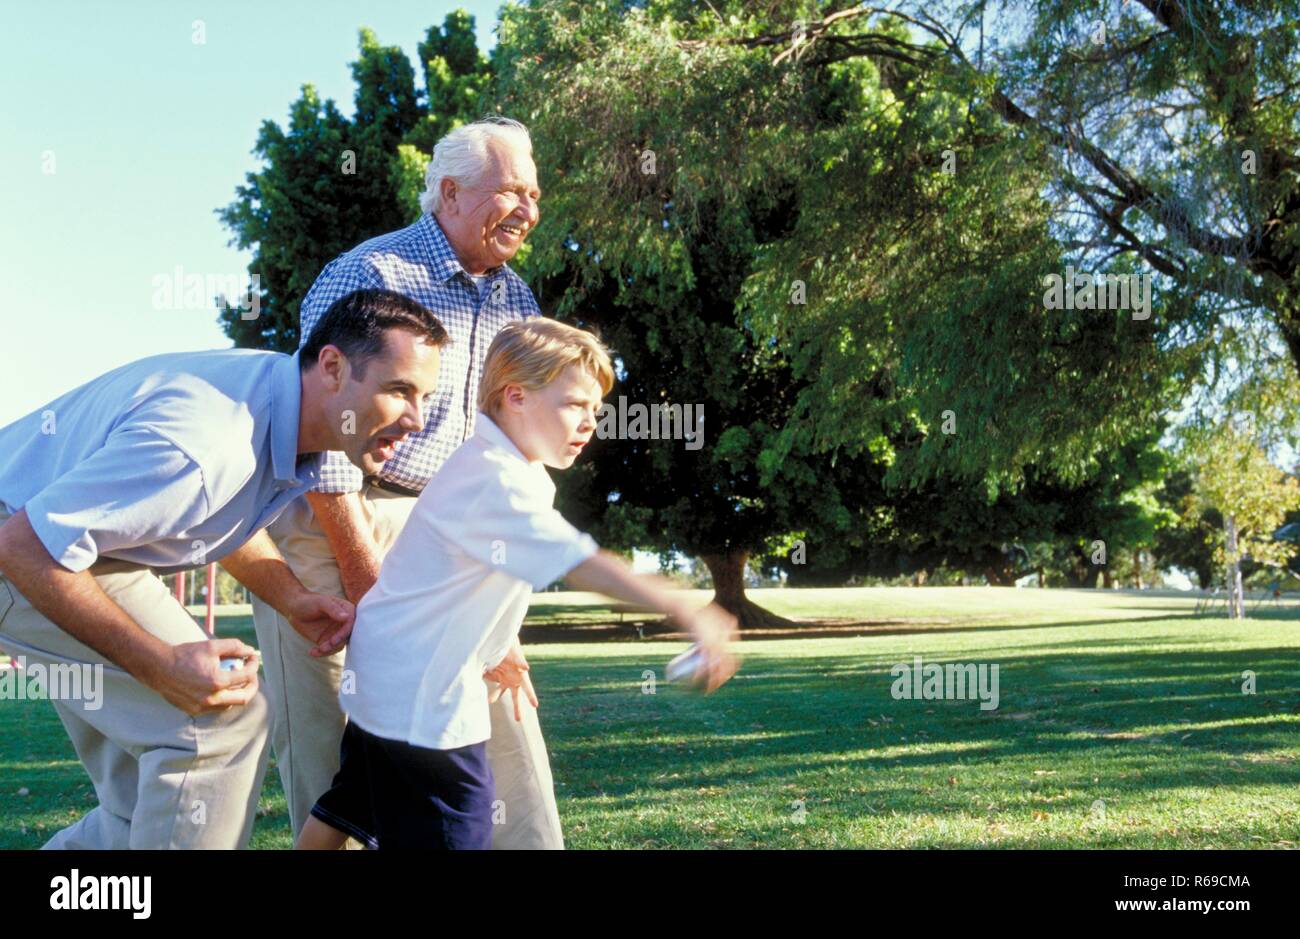 Ritratto, Parkszene, 3 Generationen, Grossvater, Vater und Sohn, 7 Jahre, spielen auf einer Wiese Boule Foto Stock